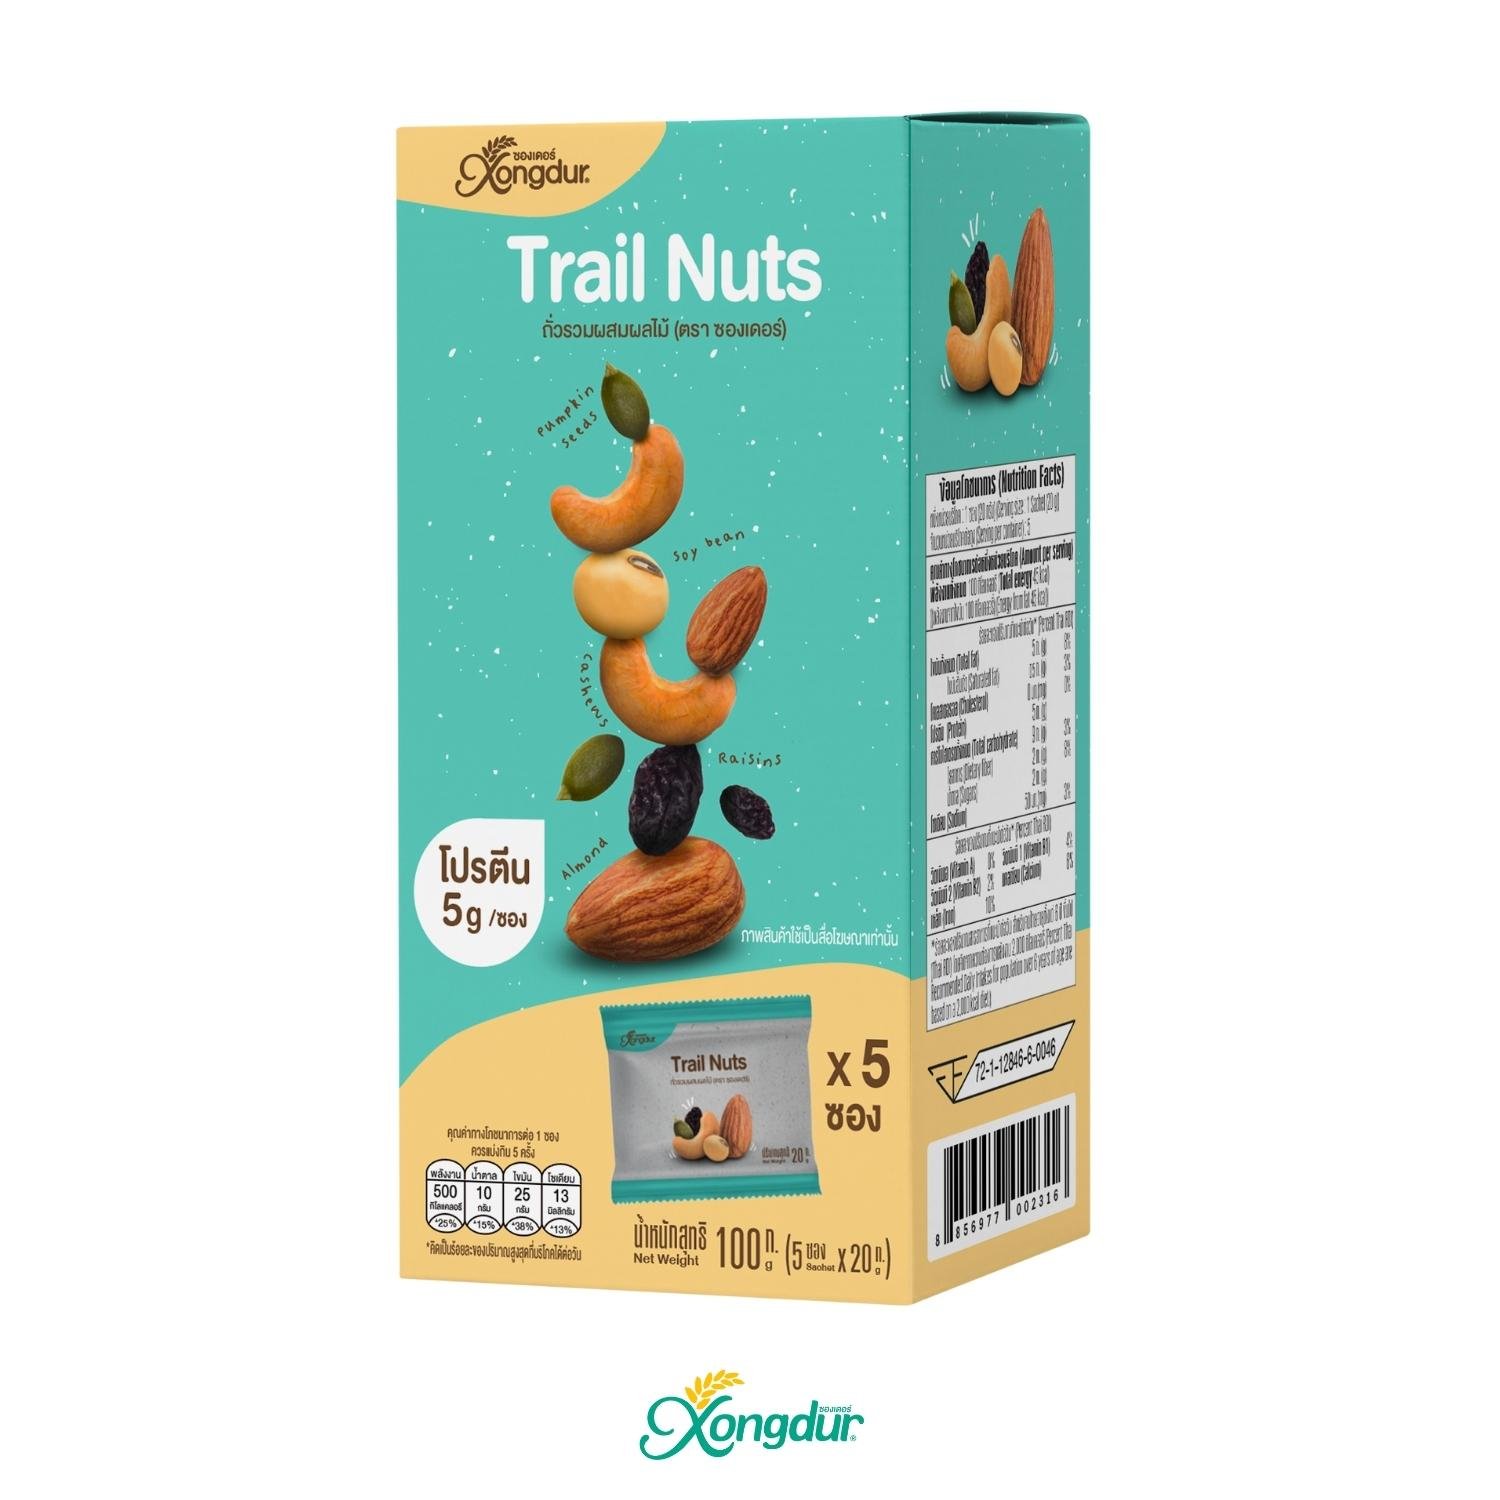 Trail Nuts